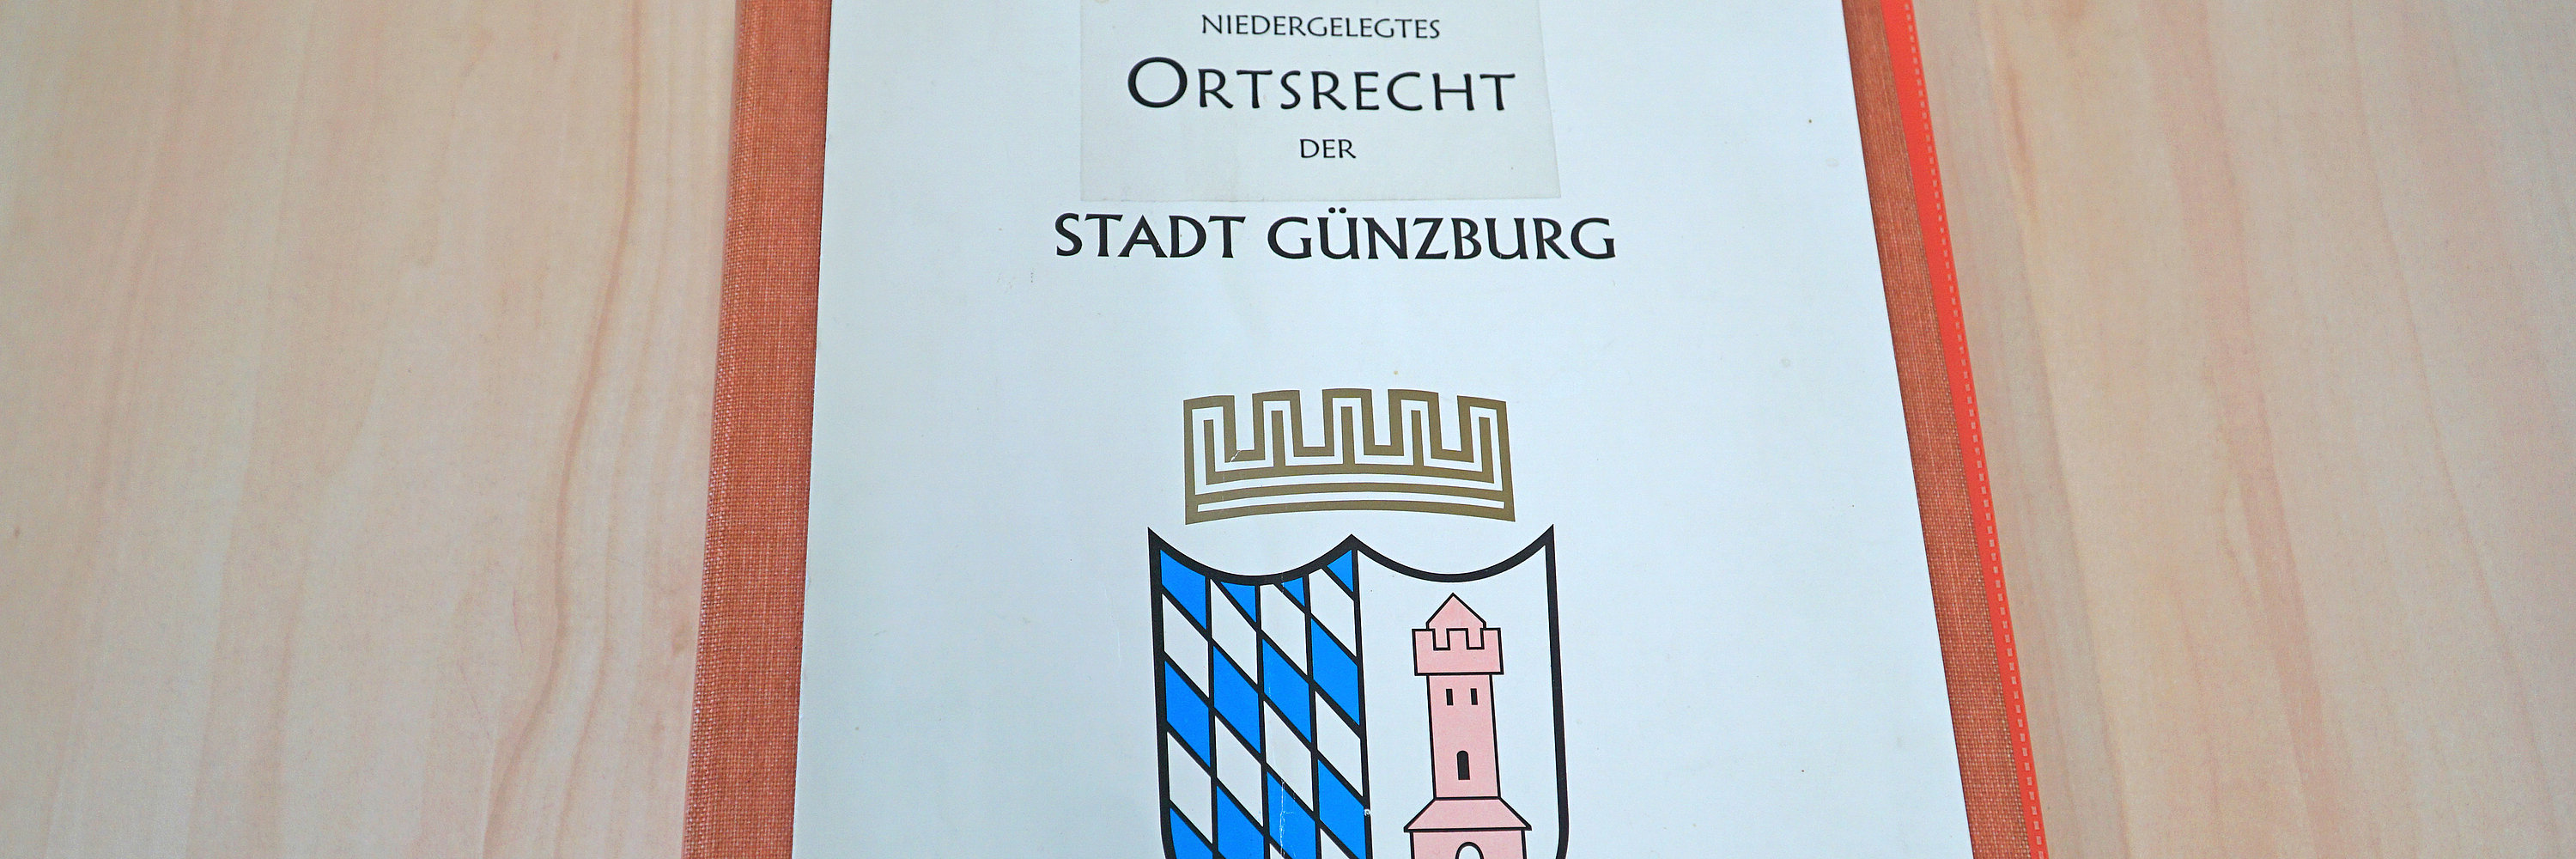 Stadtrecht der Stadt Günzburg. Foto: Julia Ehrlich/ Stadt Günzburg